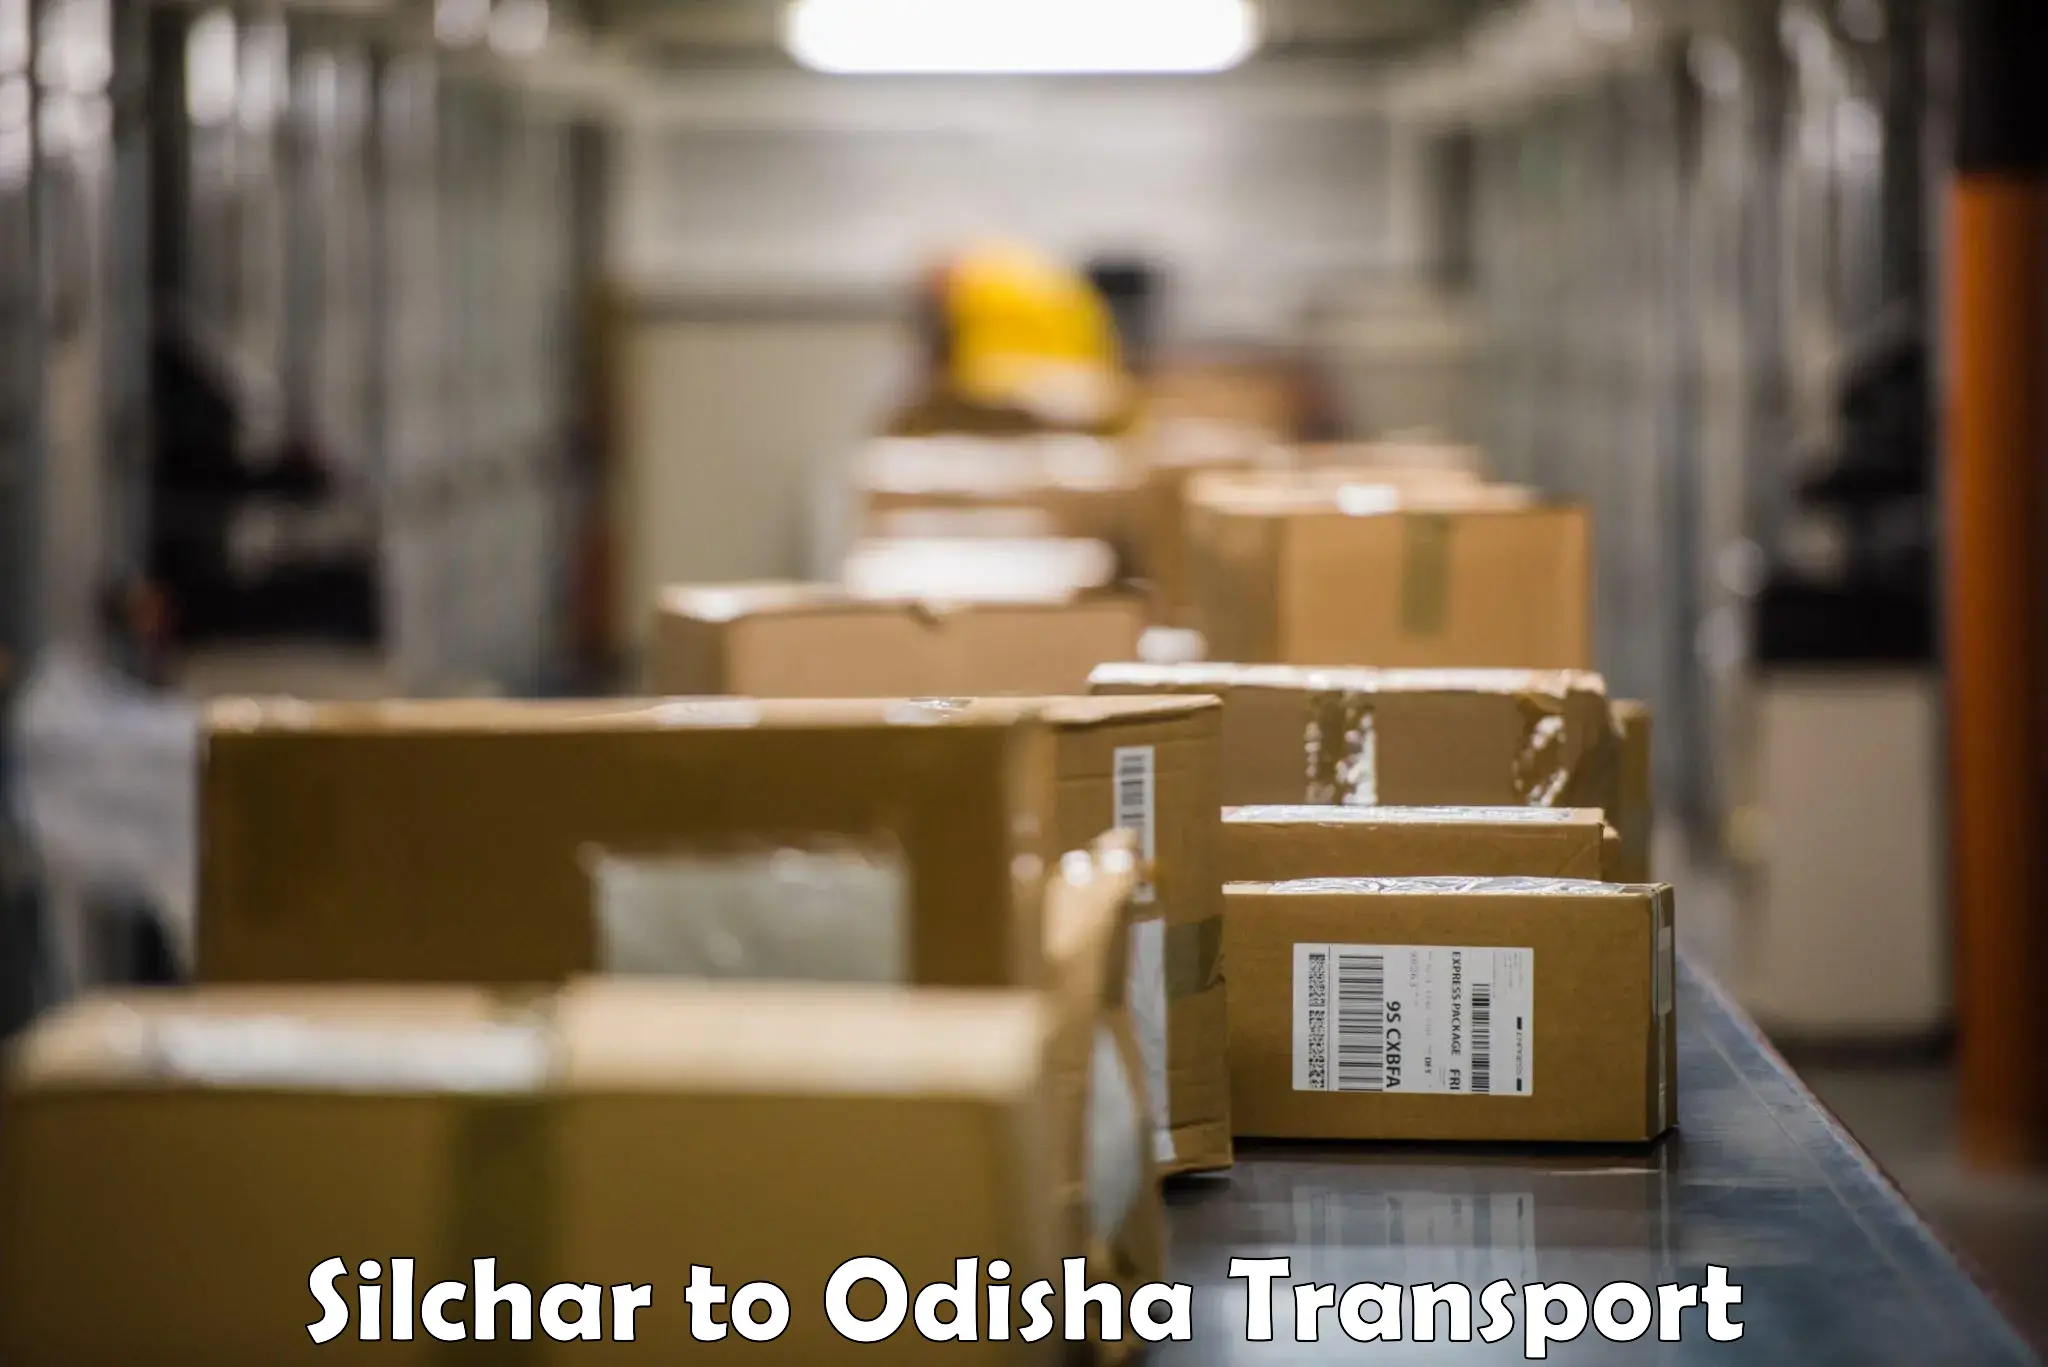 Pick up transport service Silchar to Ghatgaon